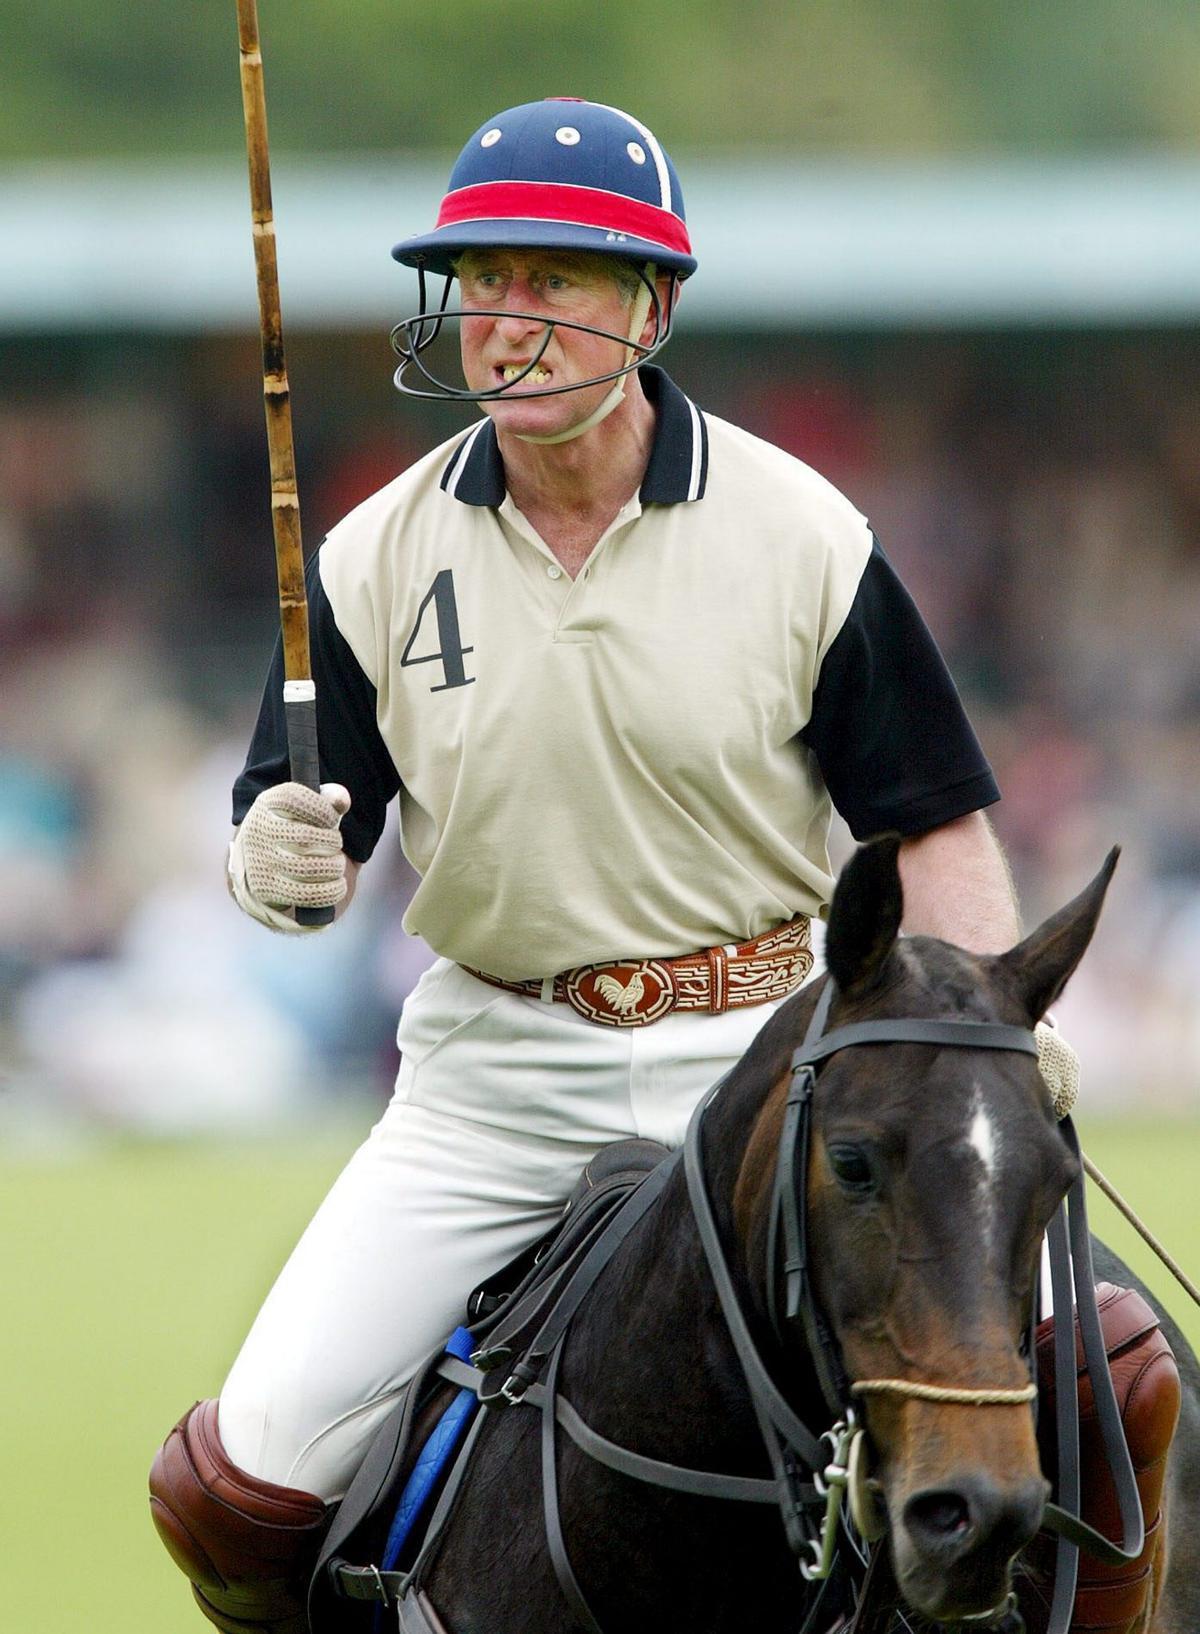 Príncipe Carlos de Inglaterra. El príncipe Carlos de Inglaterra durante un partido del Kuoni World Class Polo Day celebrado en Ewhurst, Reino Unido, hoy domingo 29 de mayo 2005